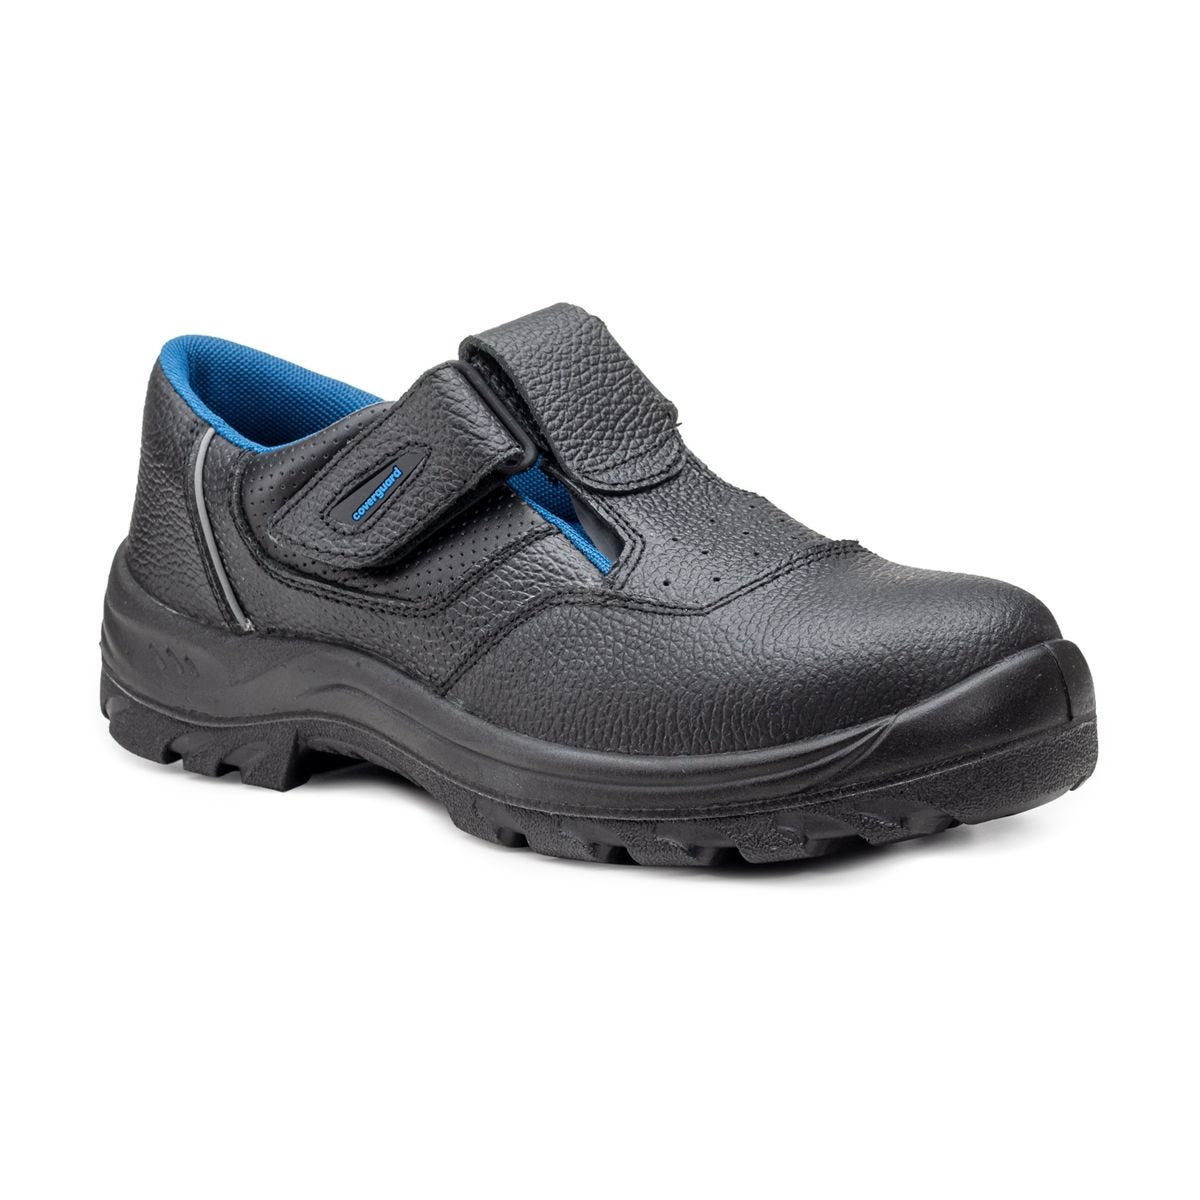 Sandales de sécurité basses Bosco II noir - Coverguard - Taille 39 0